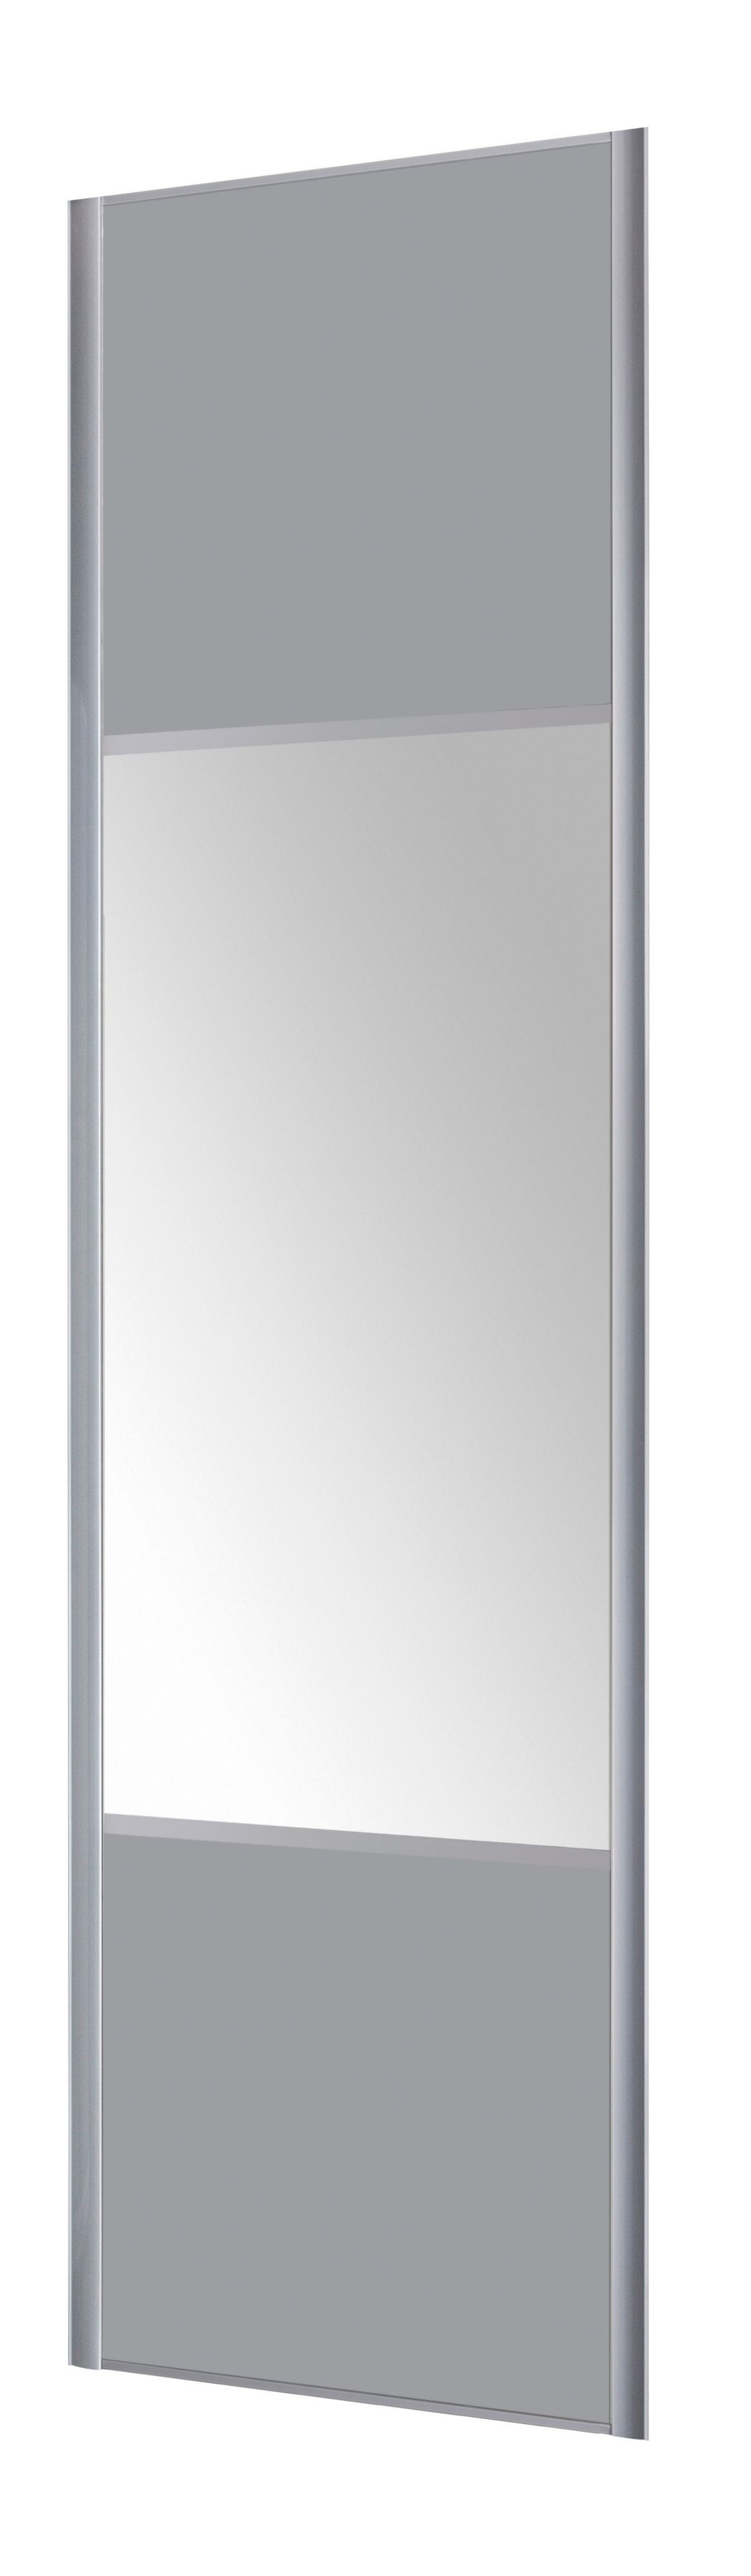 Form Valla Light grey Mirrored Sliding wardrobe door (H) 2260mm x (W) 622mm